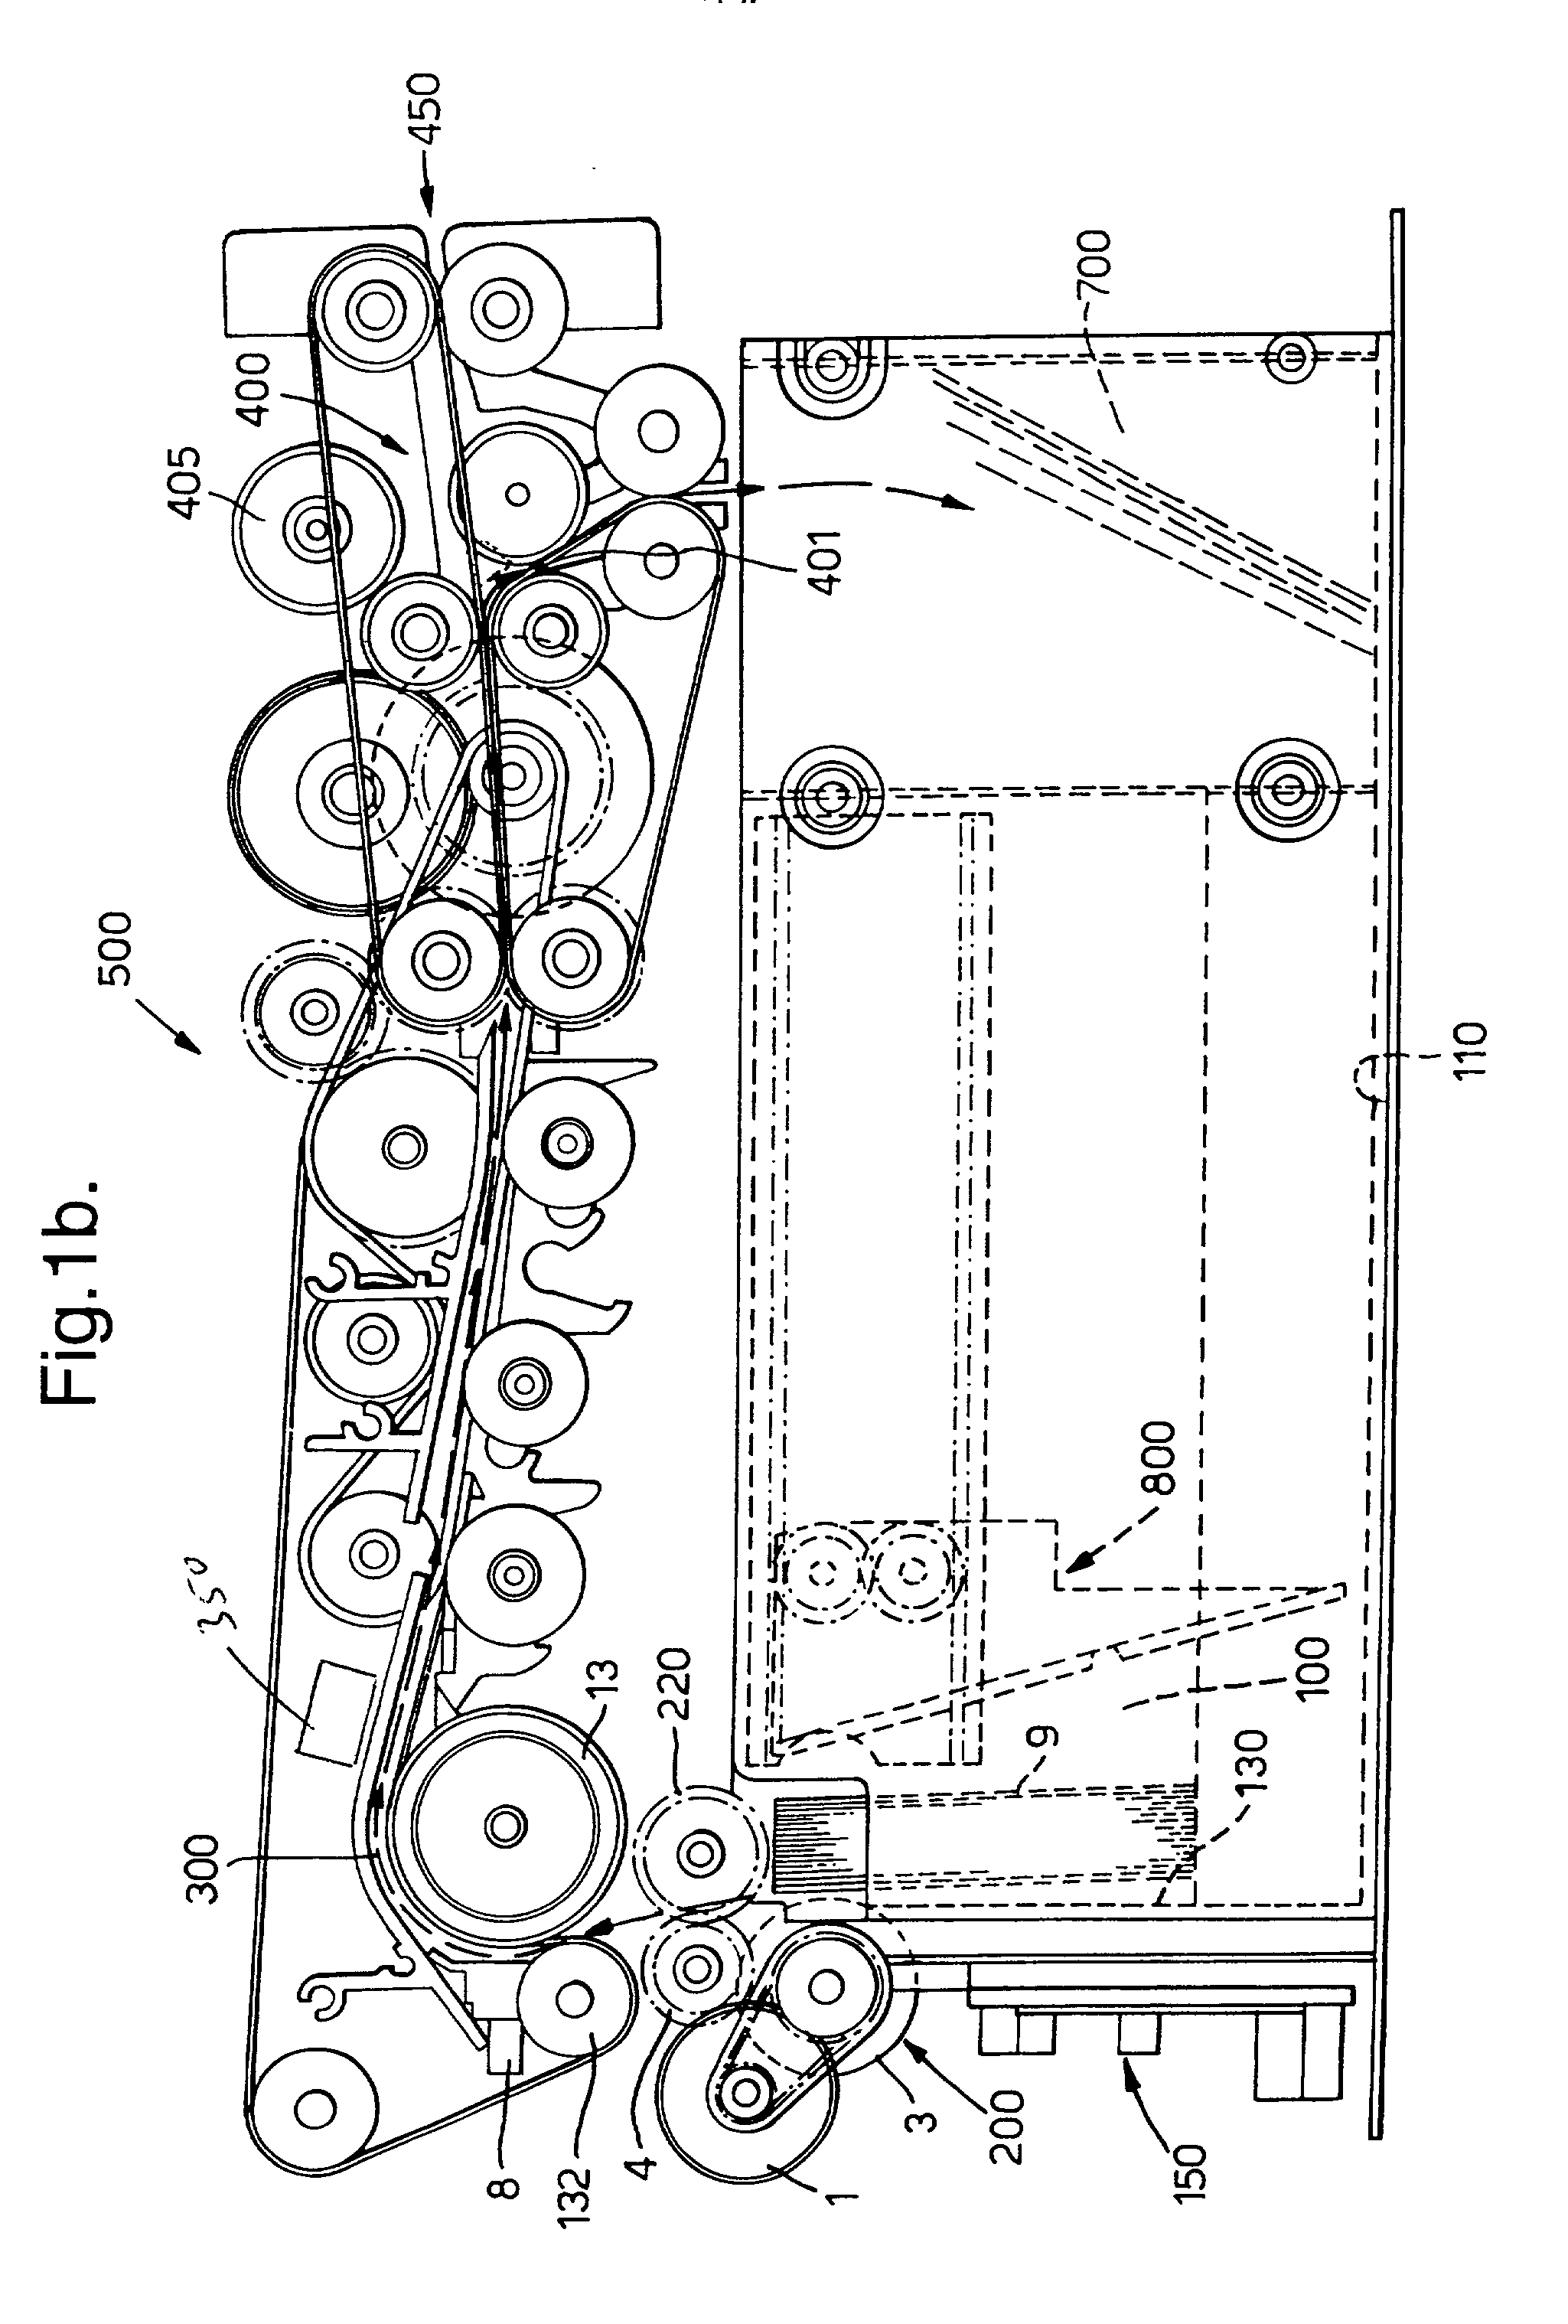 Document dispensing apparatus